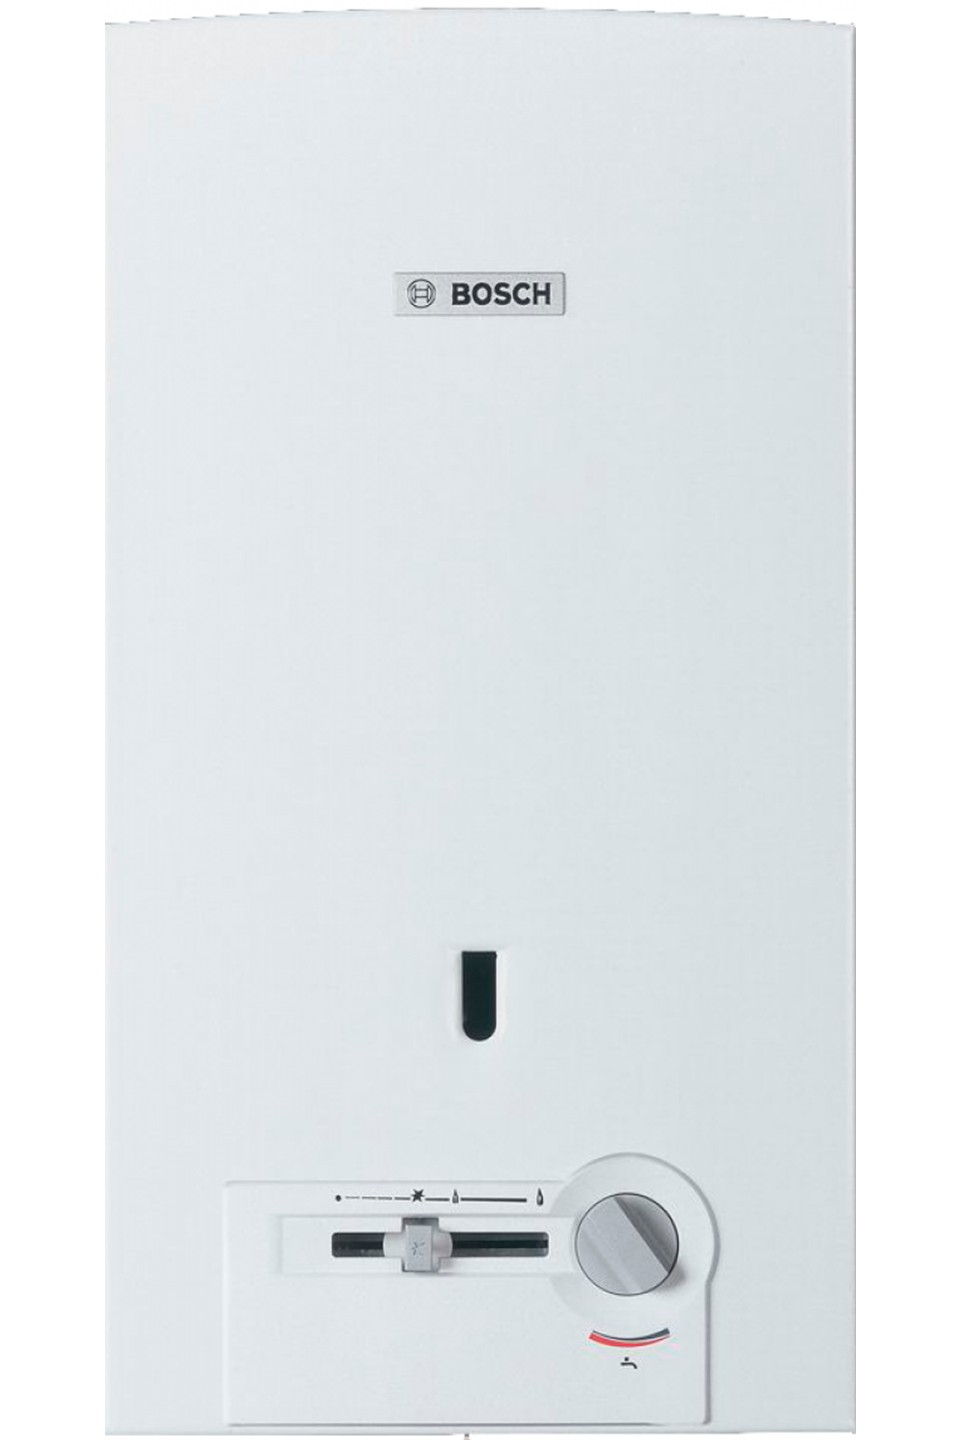 Отзывы колонка bosch газовая Bosch Therm 4000 O W 10-2 P (7701331010) в Украине